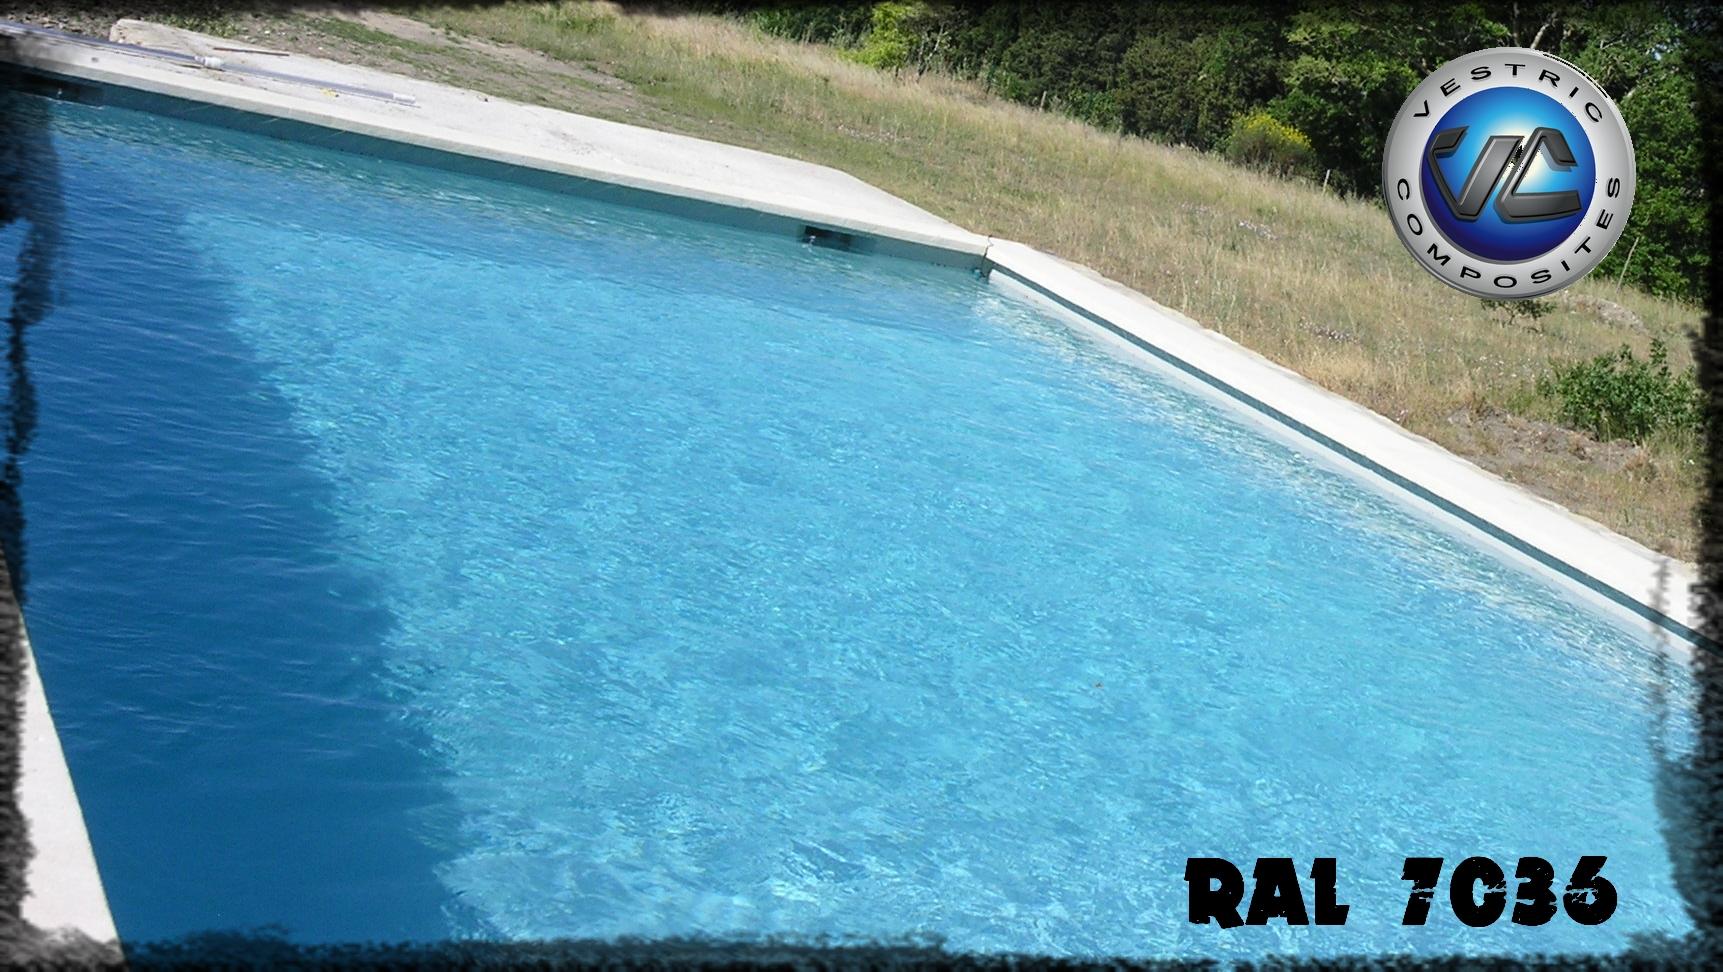 Ral 7036 gris platine piscine en eau couleur resine gel coat vestric composites 2